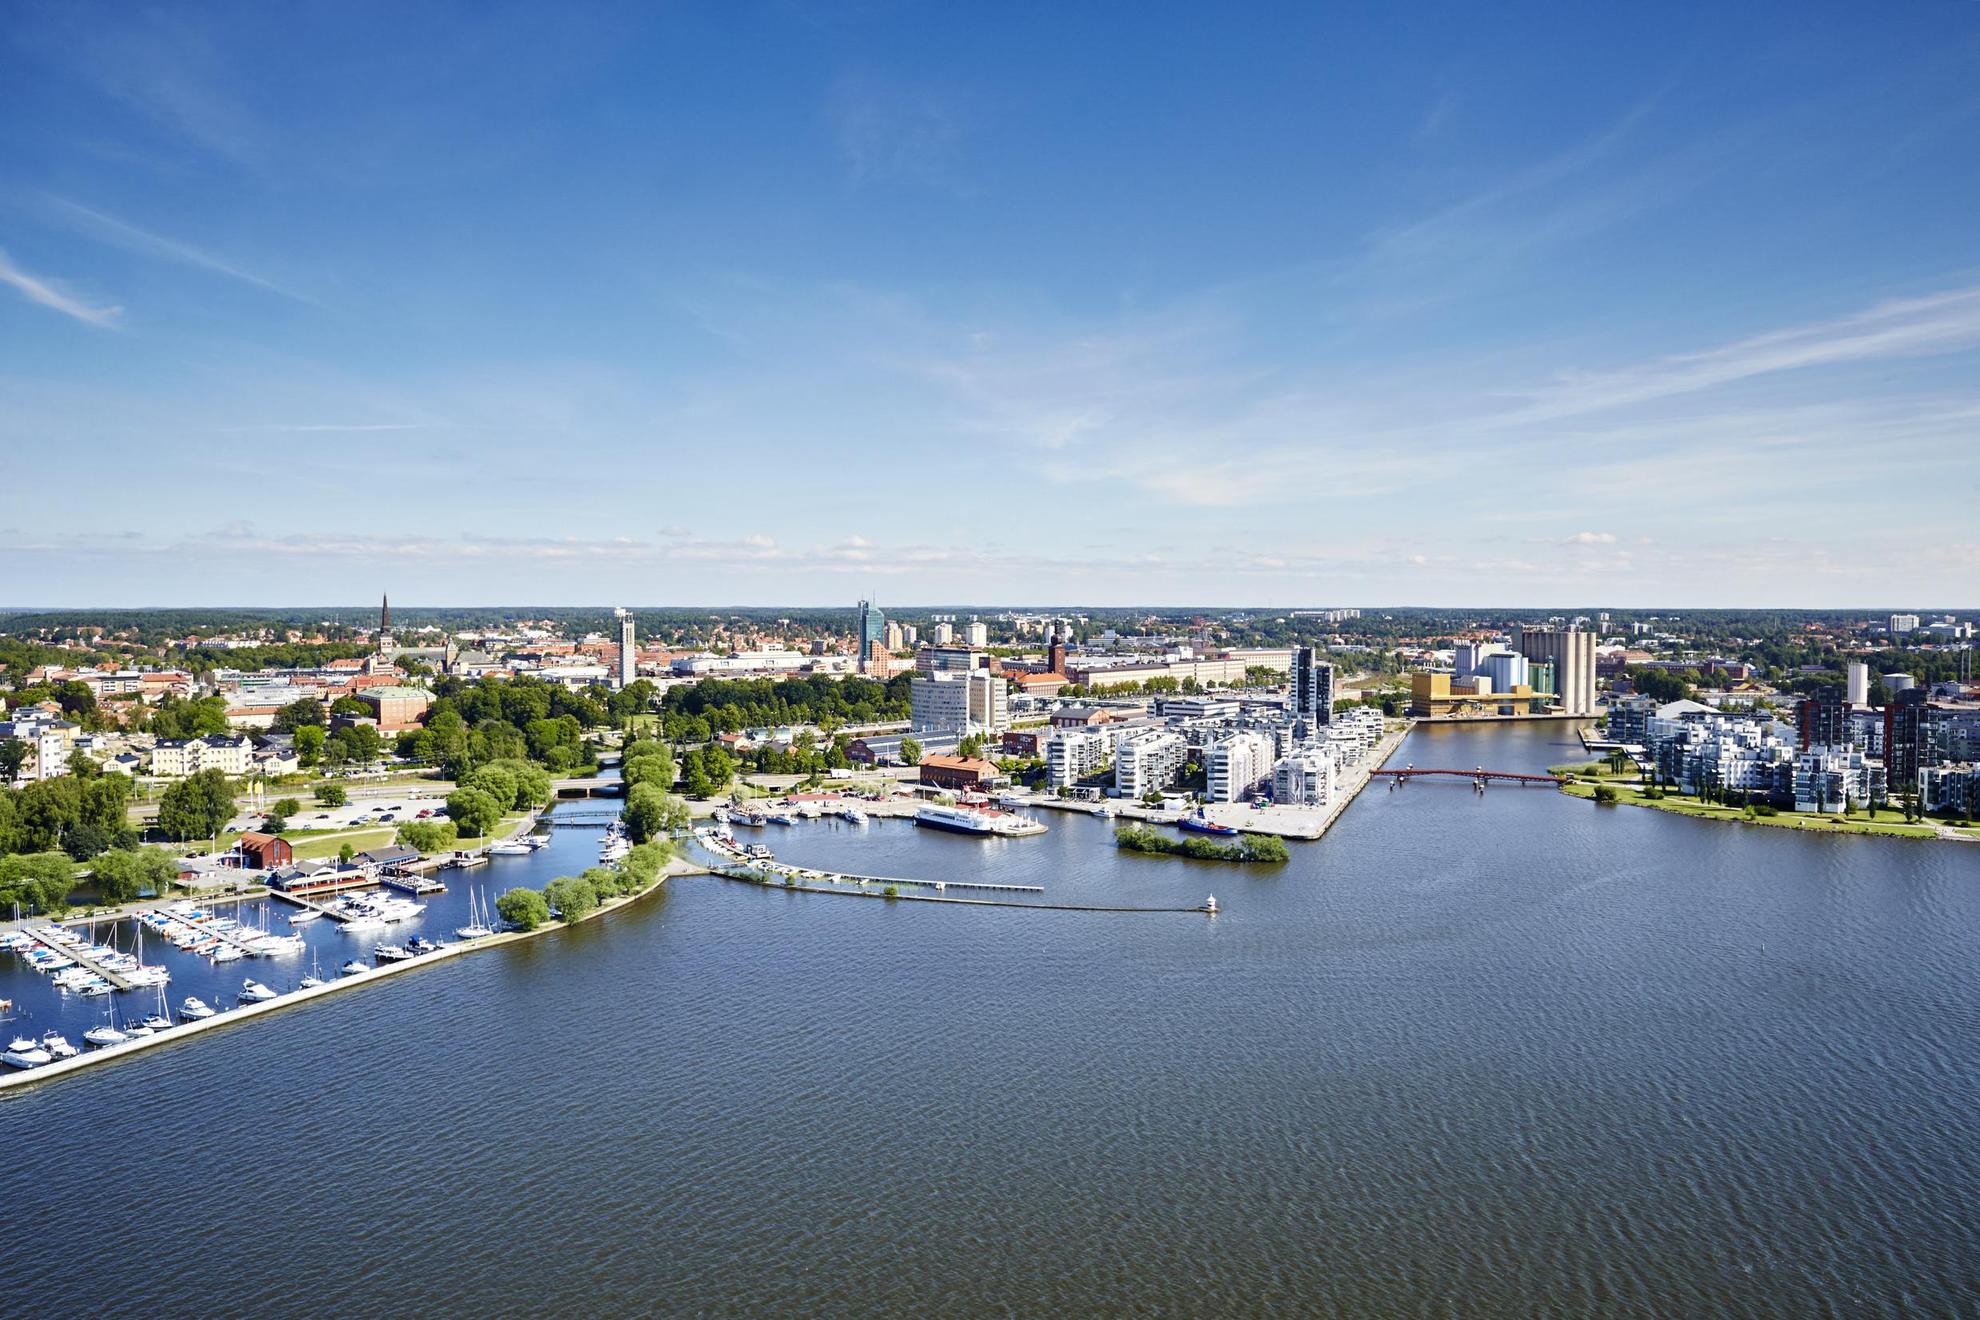 Ein Luftbild von Västerås im Sommer am Wasser.